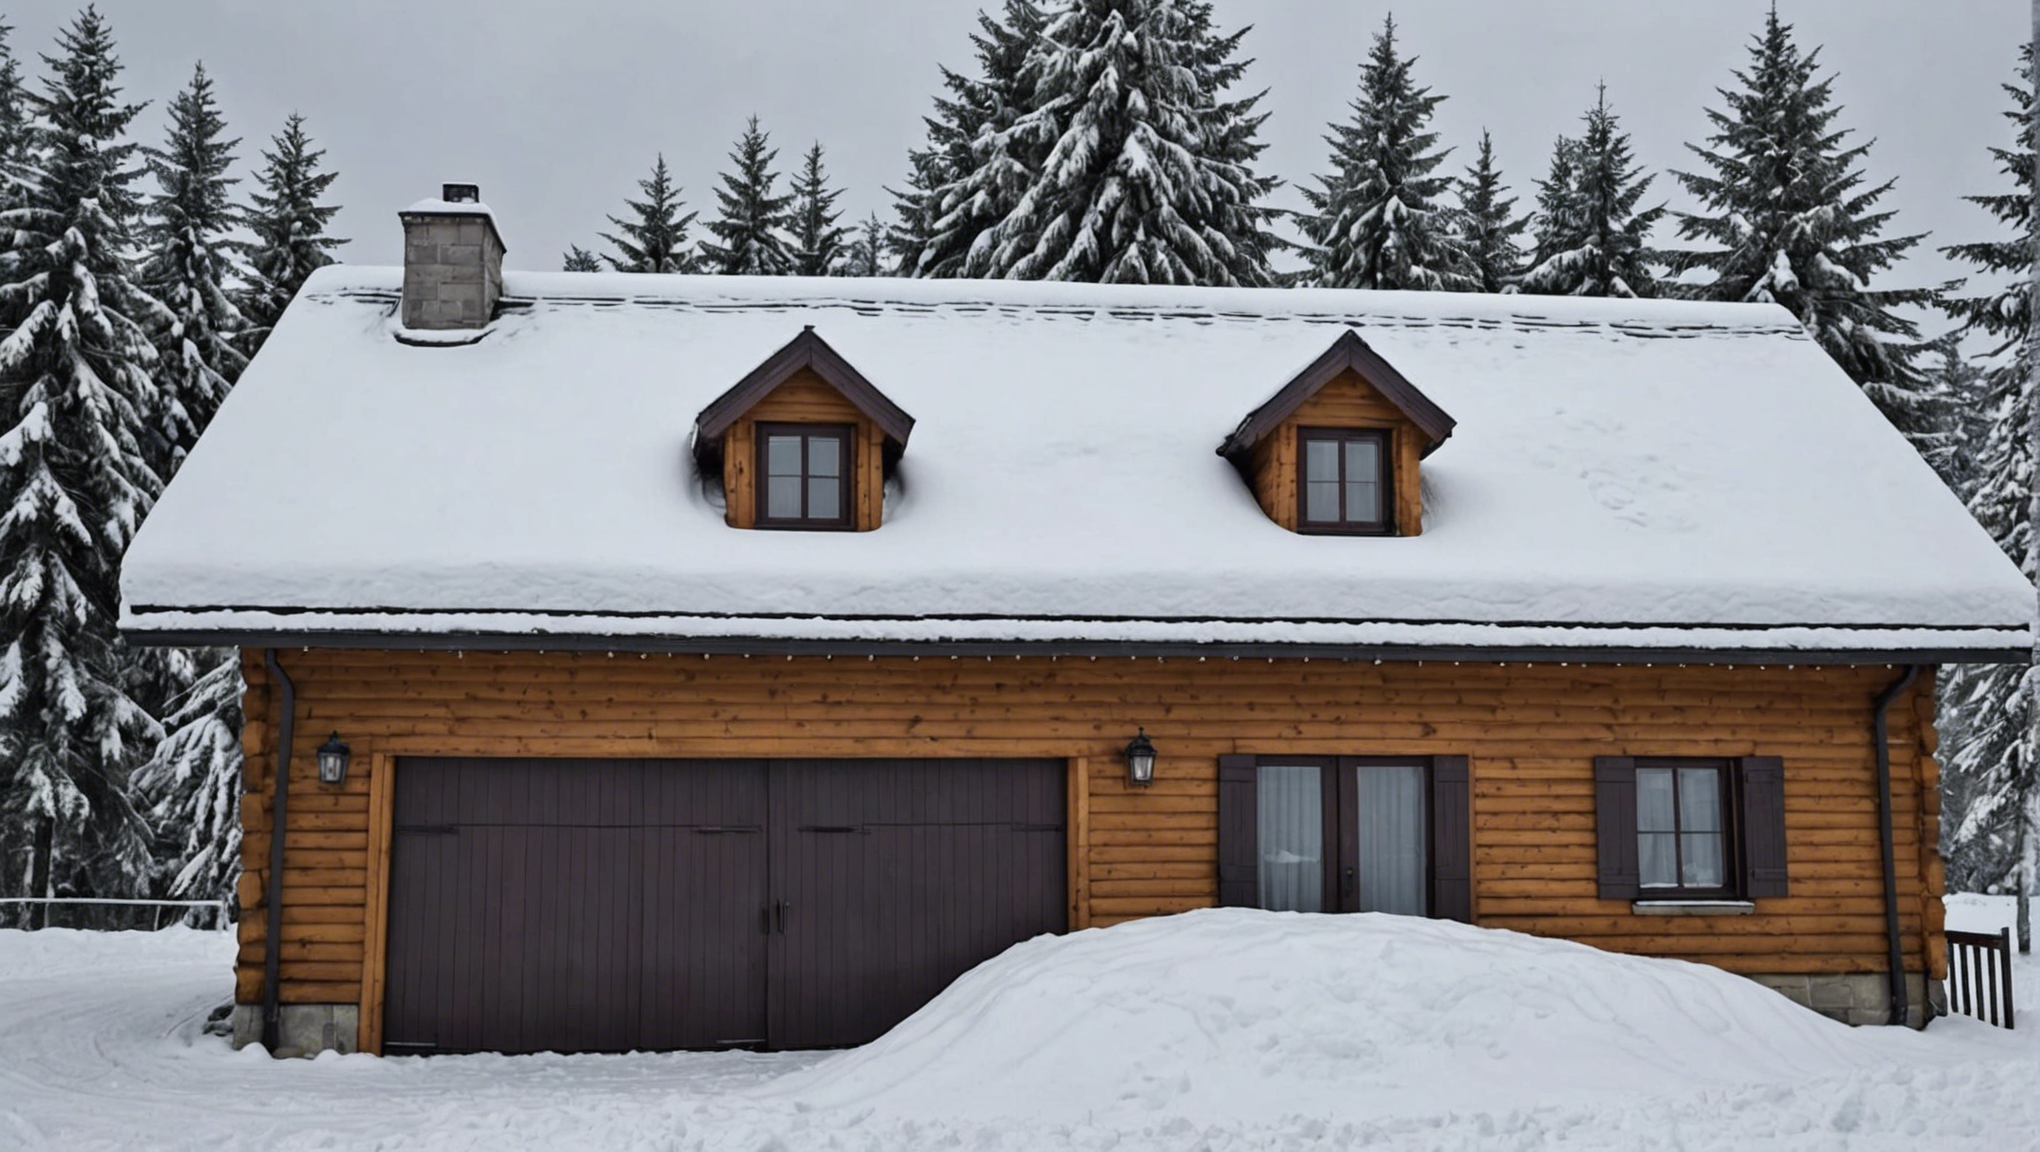 découvrez comment protéger efficacement votre toit des dommages causés par la neige avec nos conseils pratiques et astuces utiles.